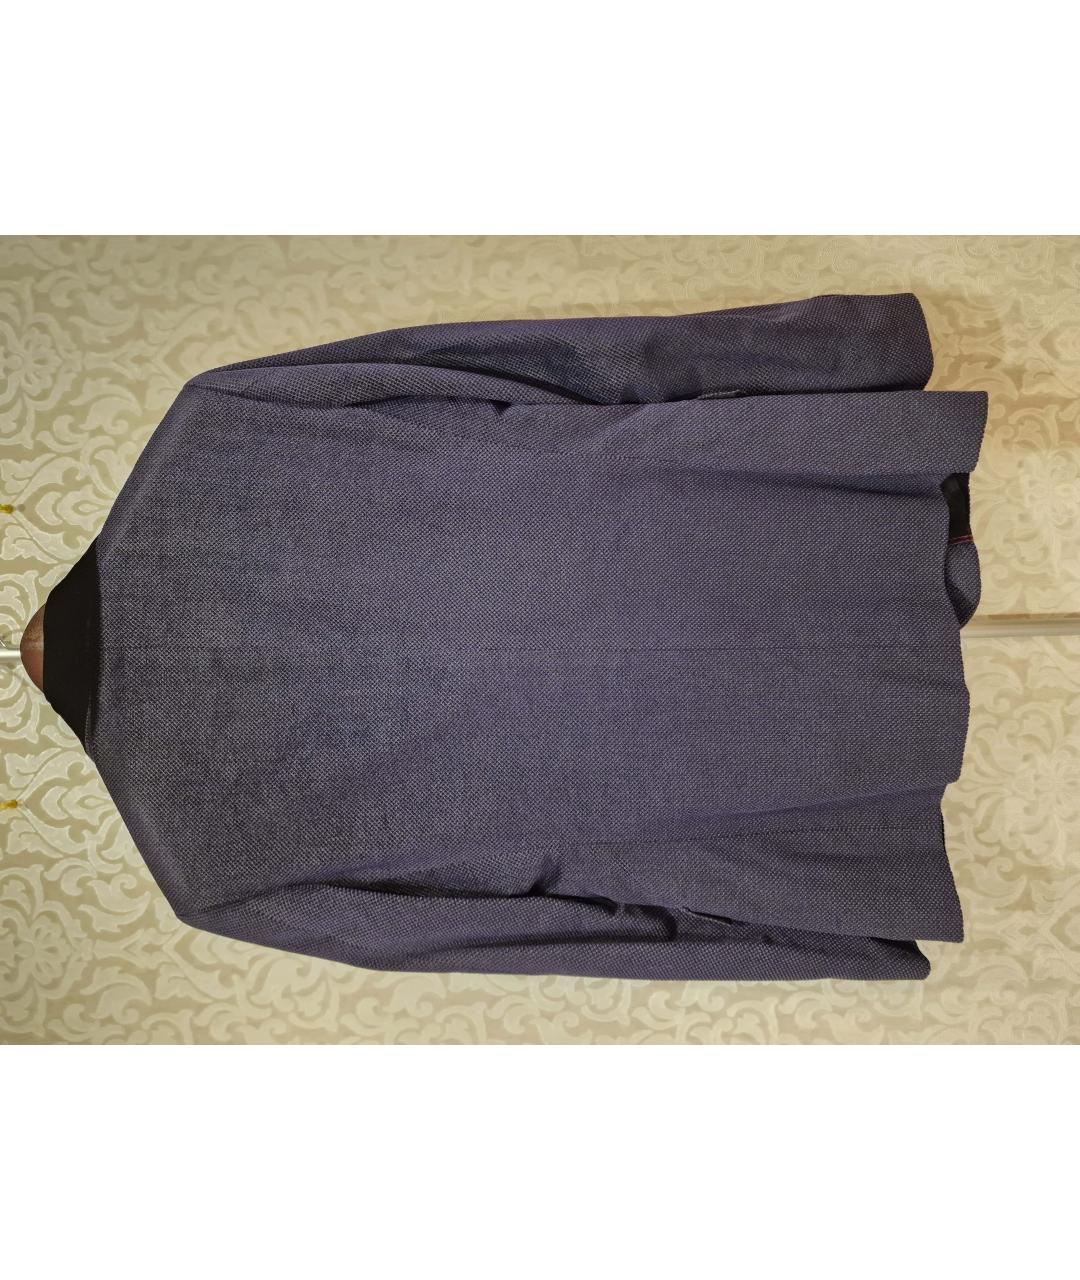 MOSCHINO Темно-синий хлопковый пиджак, фото 2